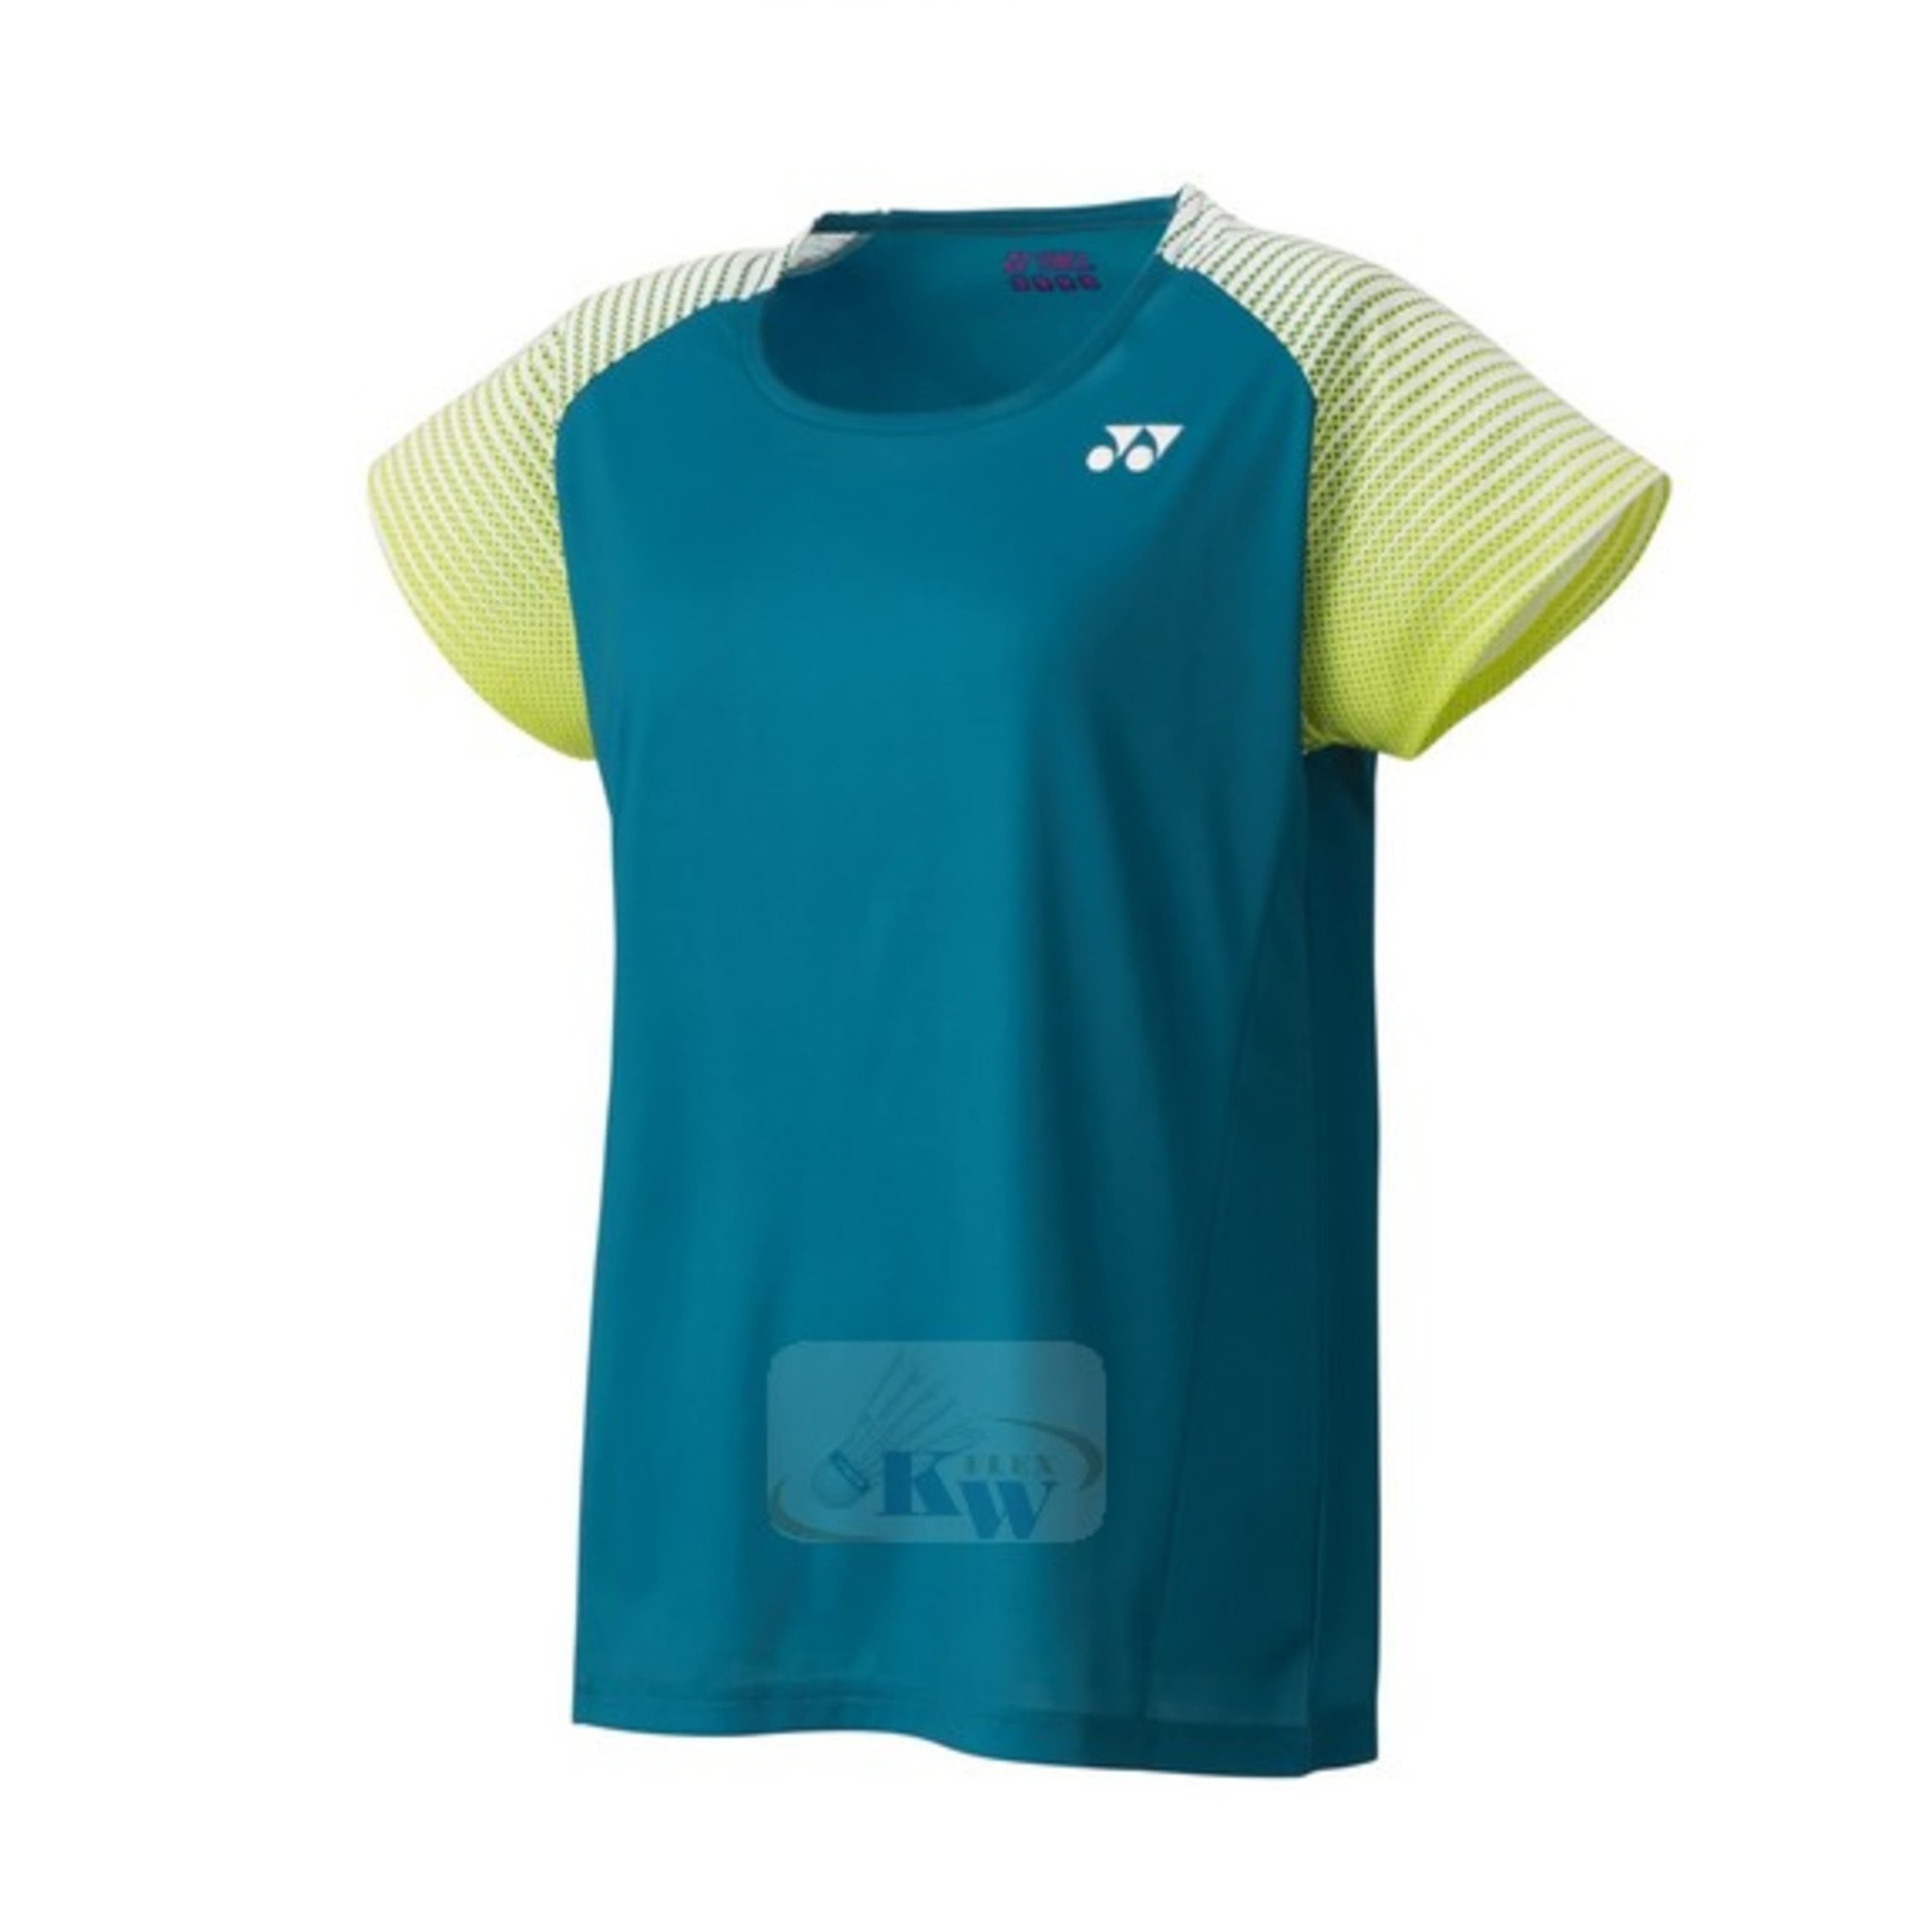 Yonex 16446EX Dark Blue damen t-shirt kaufen? - KW FLEX Badminton